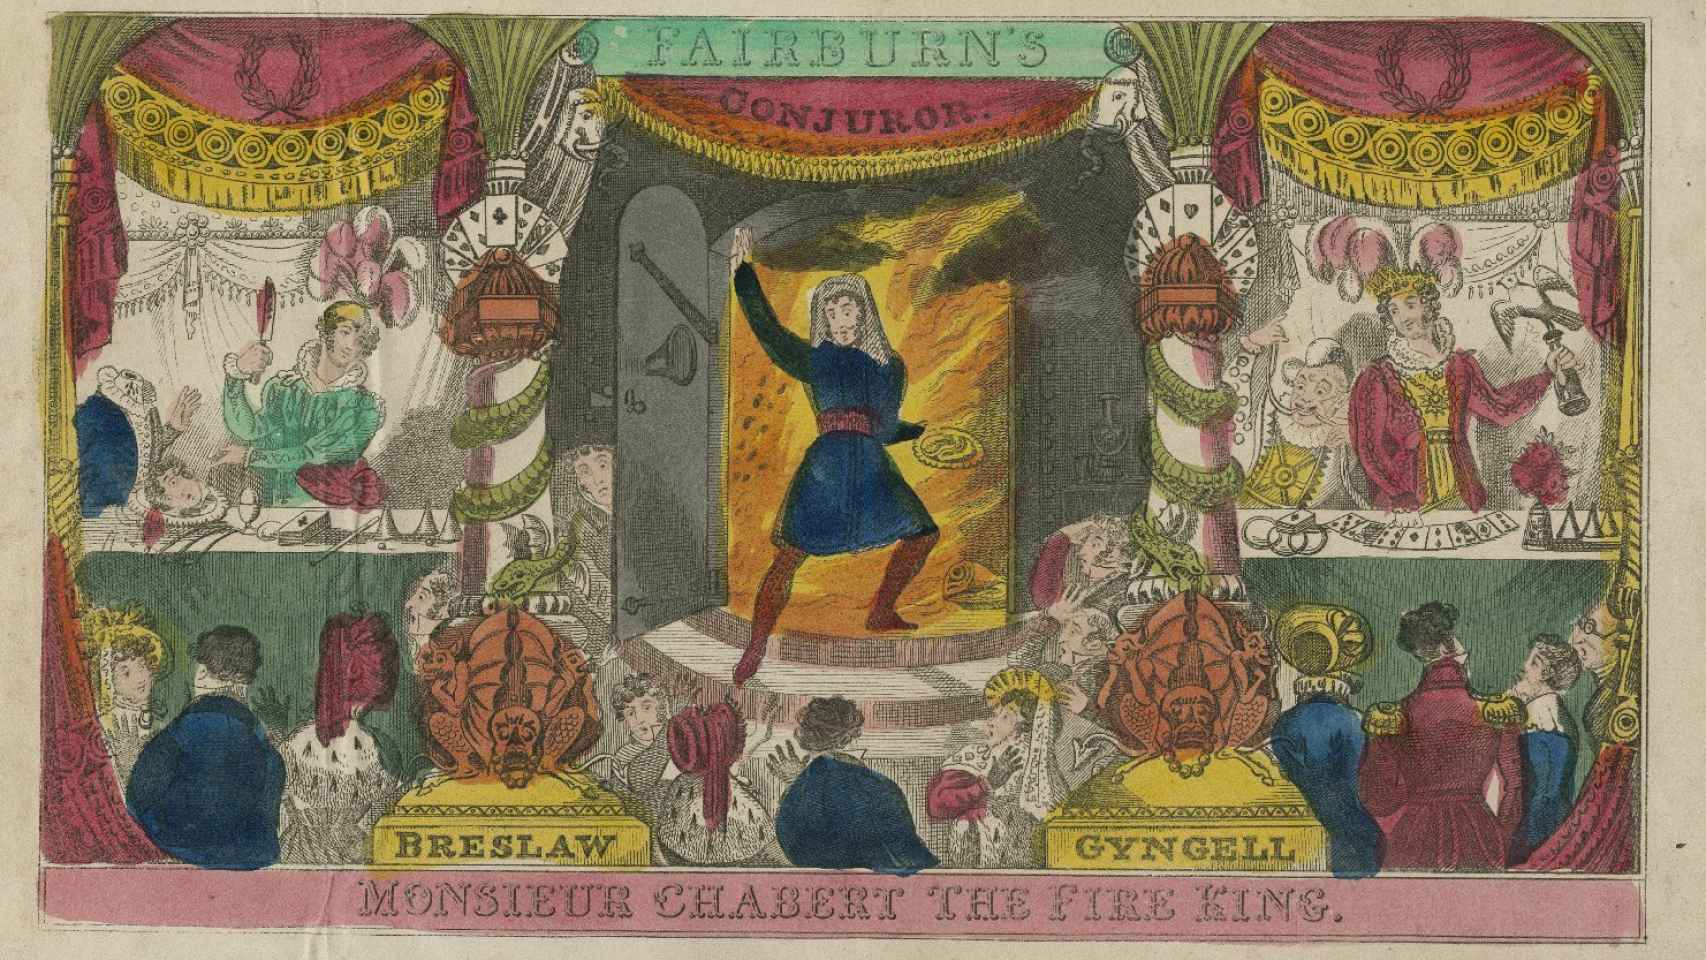 Cartel de Chabert, el rey del fuego, con quien Lionetto llegaba a ser confundido.